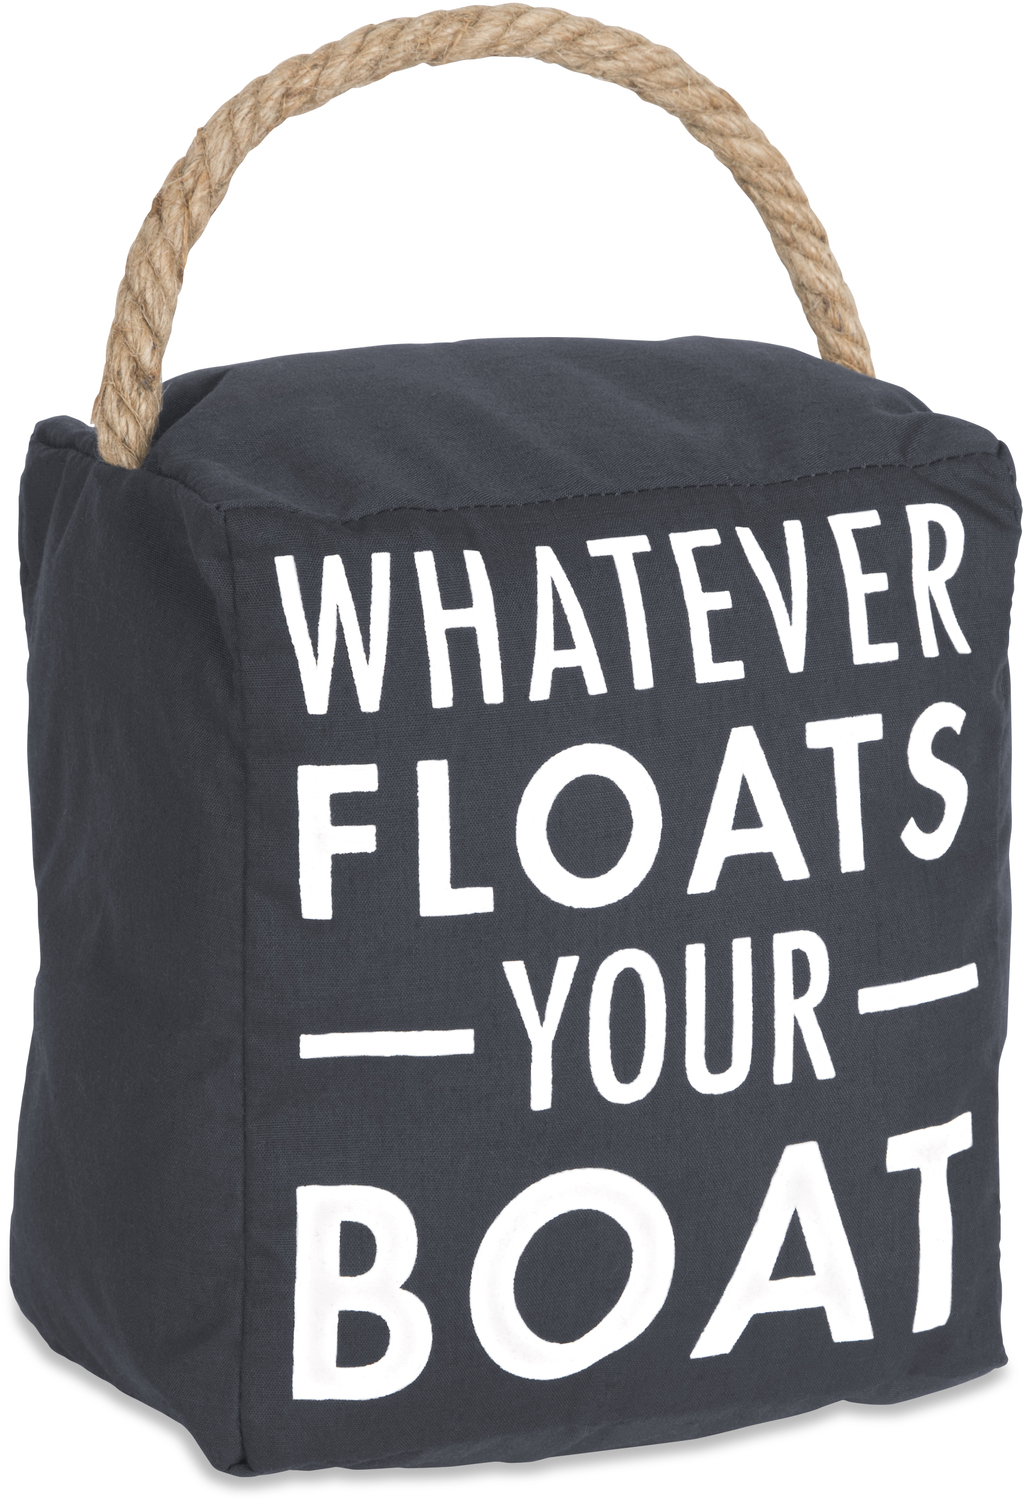 Floats Your Boat by Open Door Decor - Floats Your Boat - 5" x 6" Door Stopper